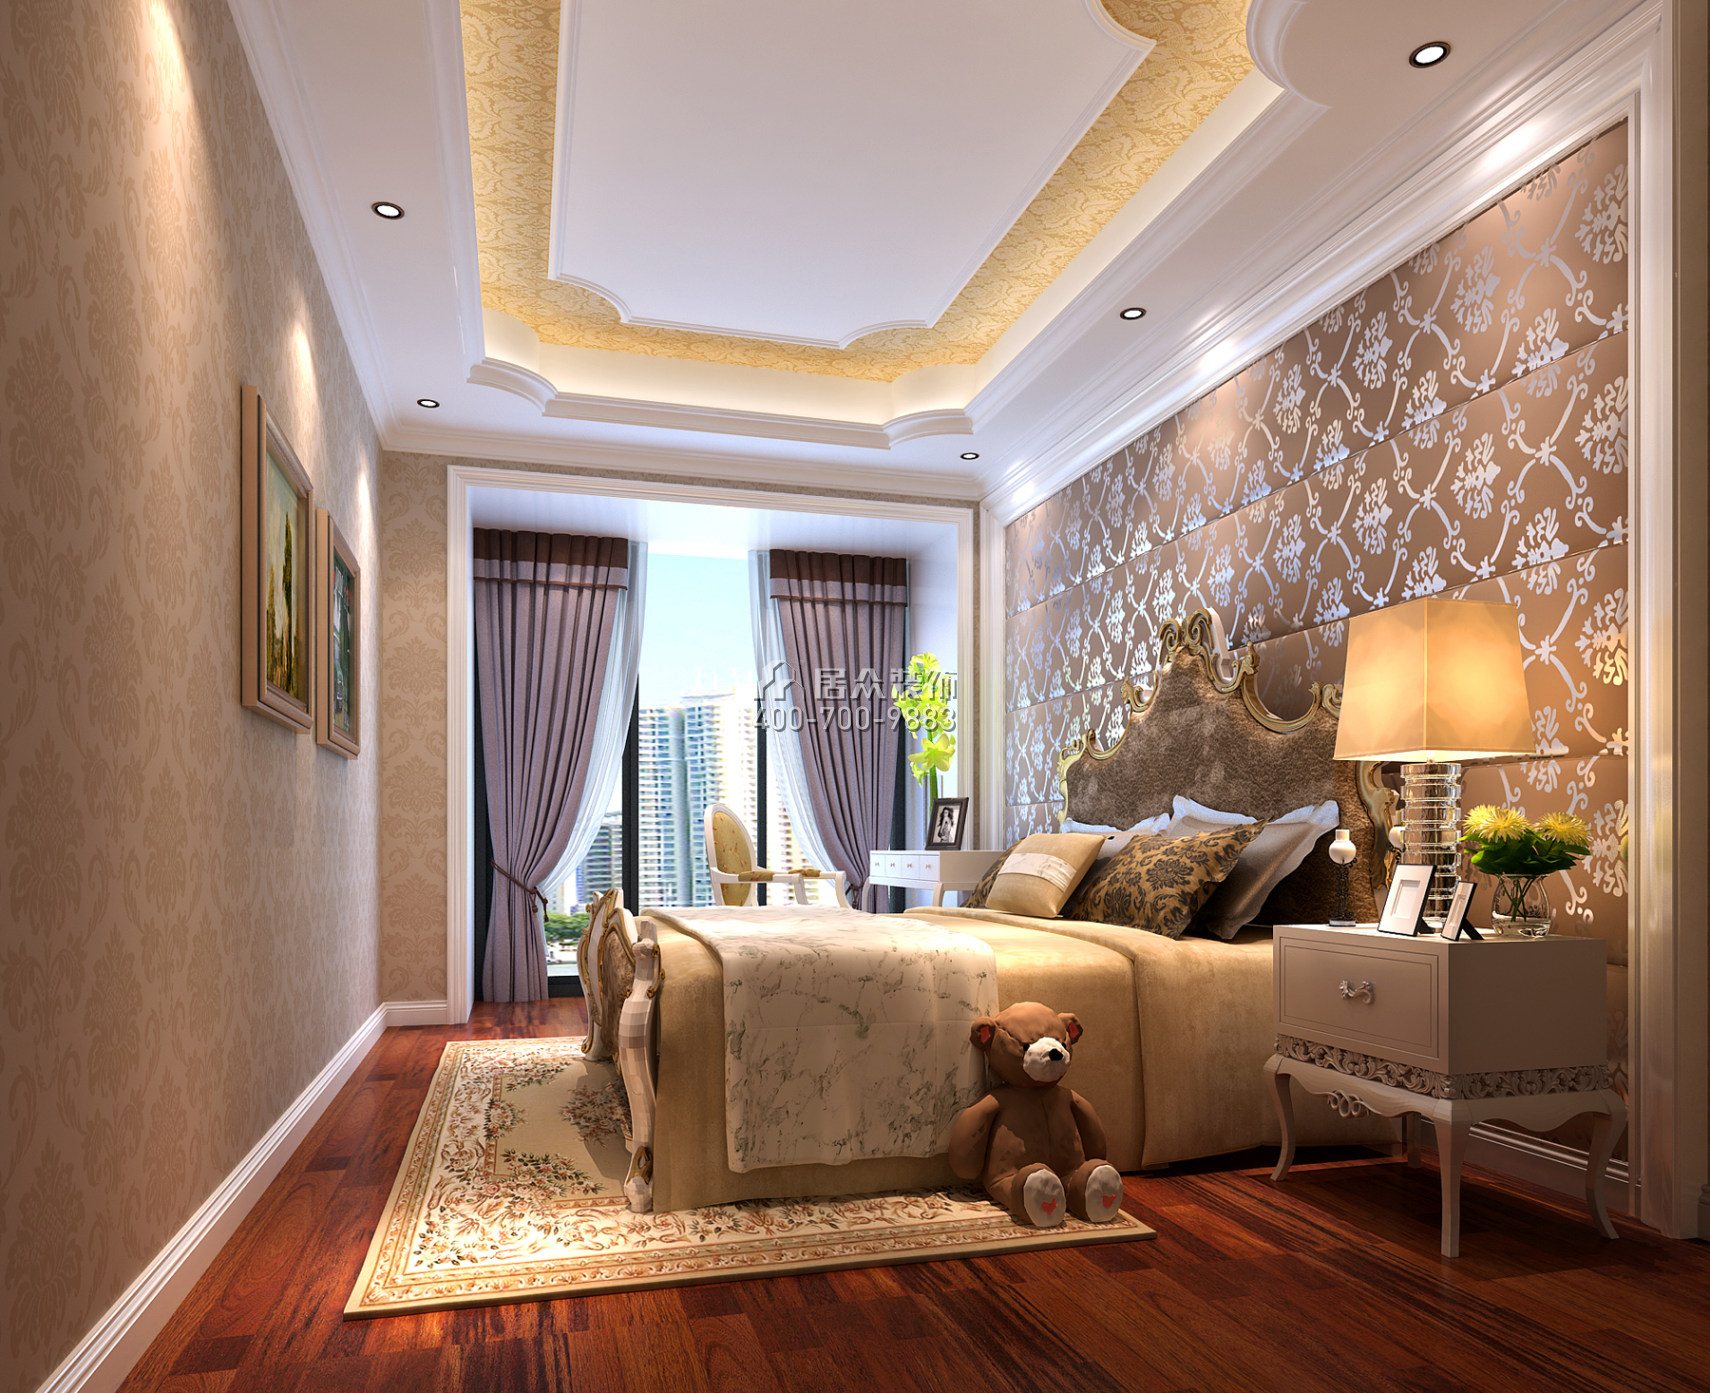 山语清晖177平方米欧式风格平层户型卧室装修效果图